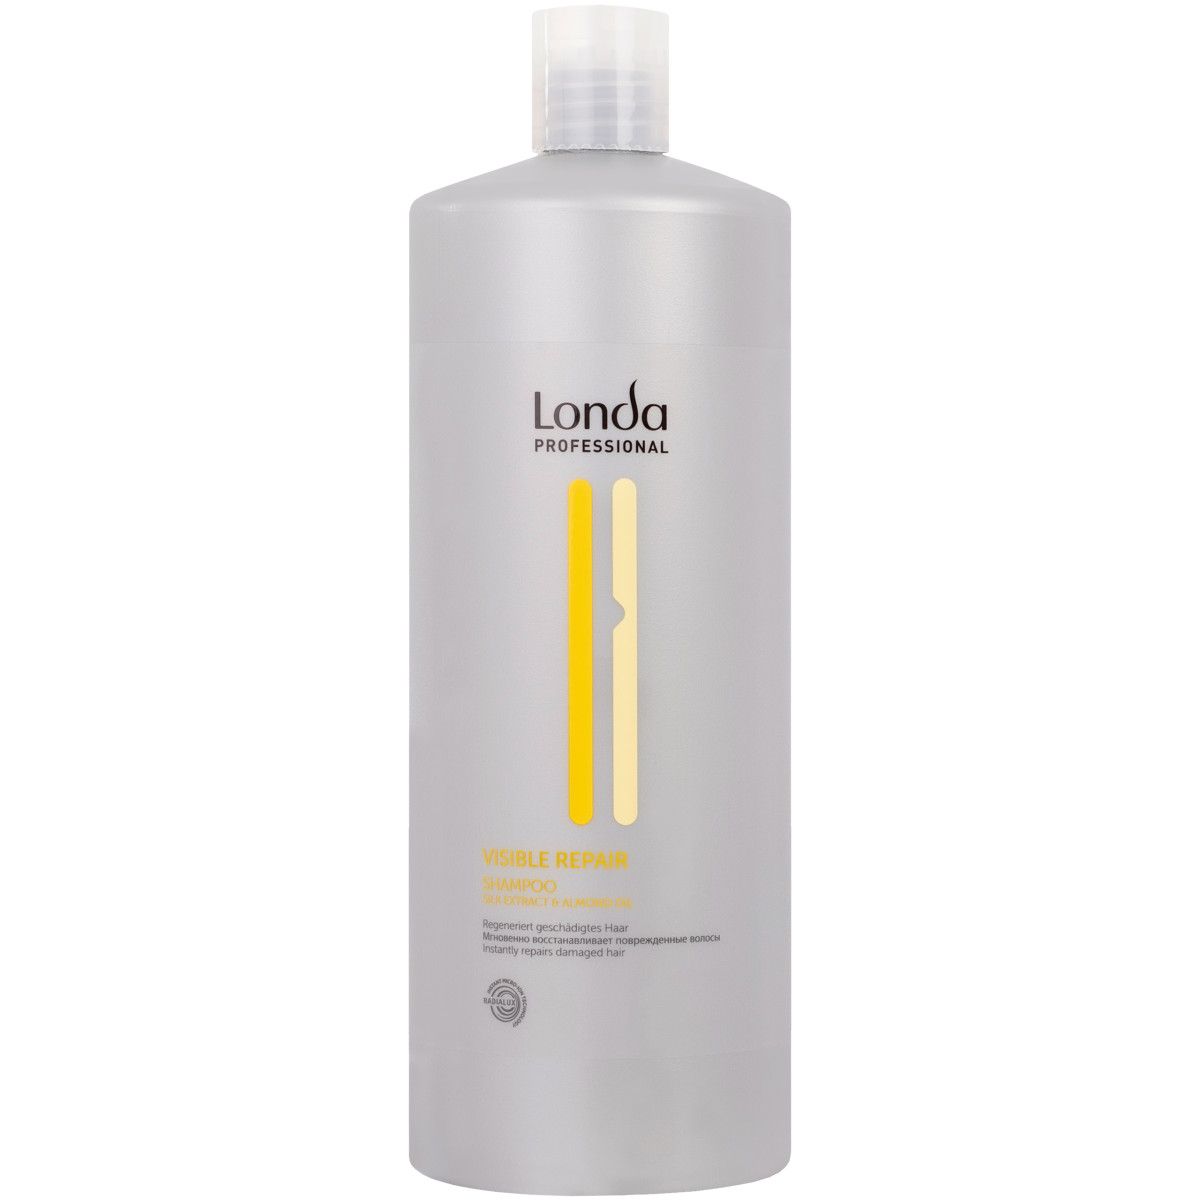 Londa Visible Repair - szampon odżywczo regenerujący do włosów, 1000ml